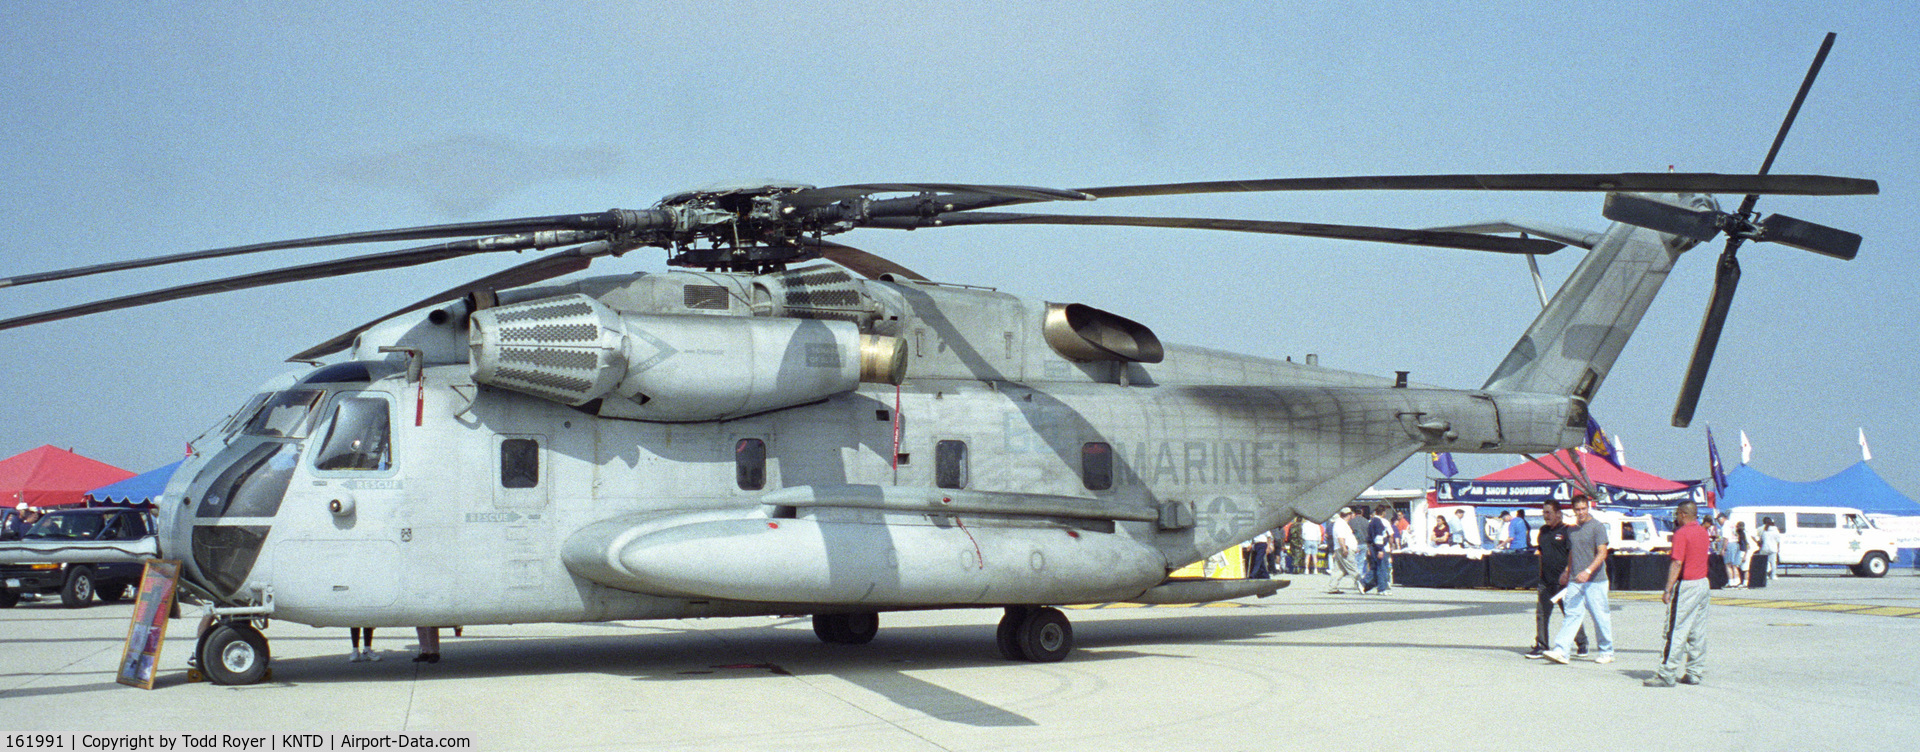 161991, Sikorsky CH-53E Super Stallion C/N 65-460, POINT MUGU AIRSHOW